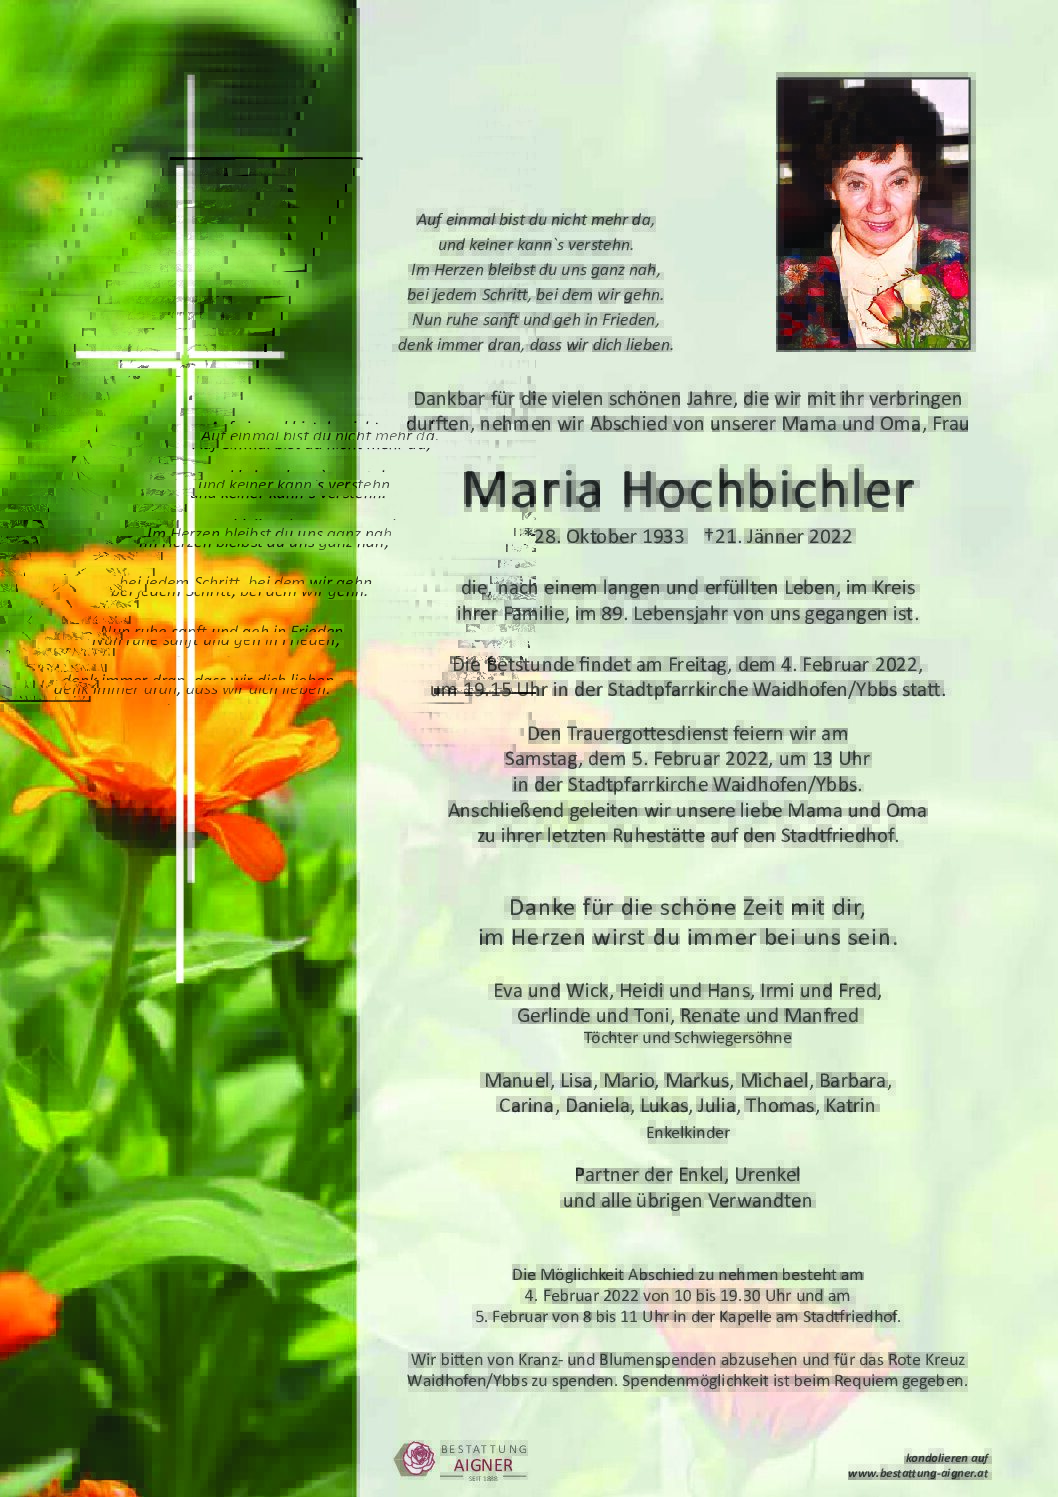 Maria Hochbichler